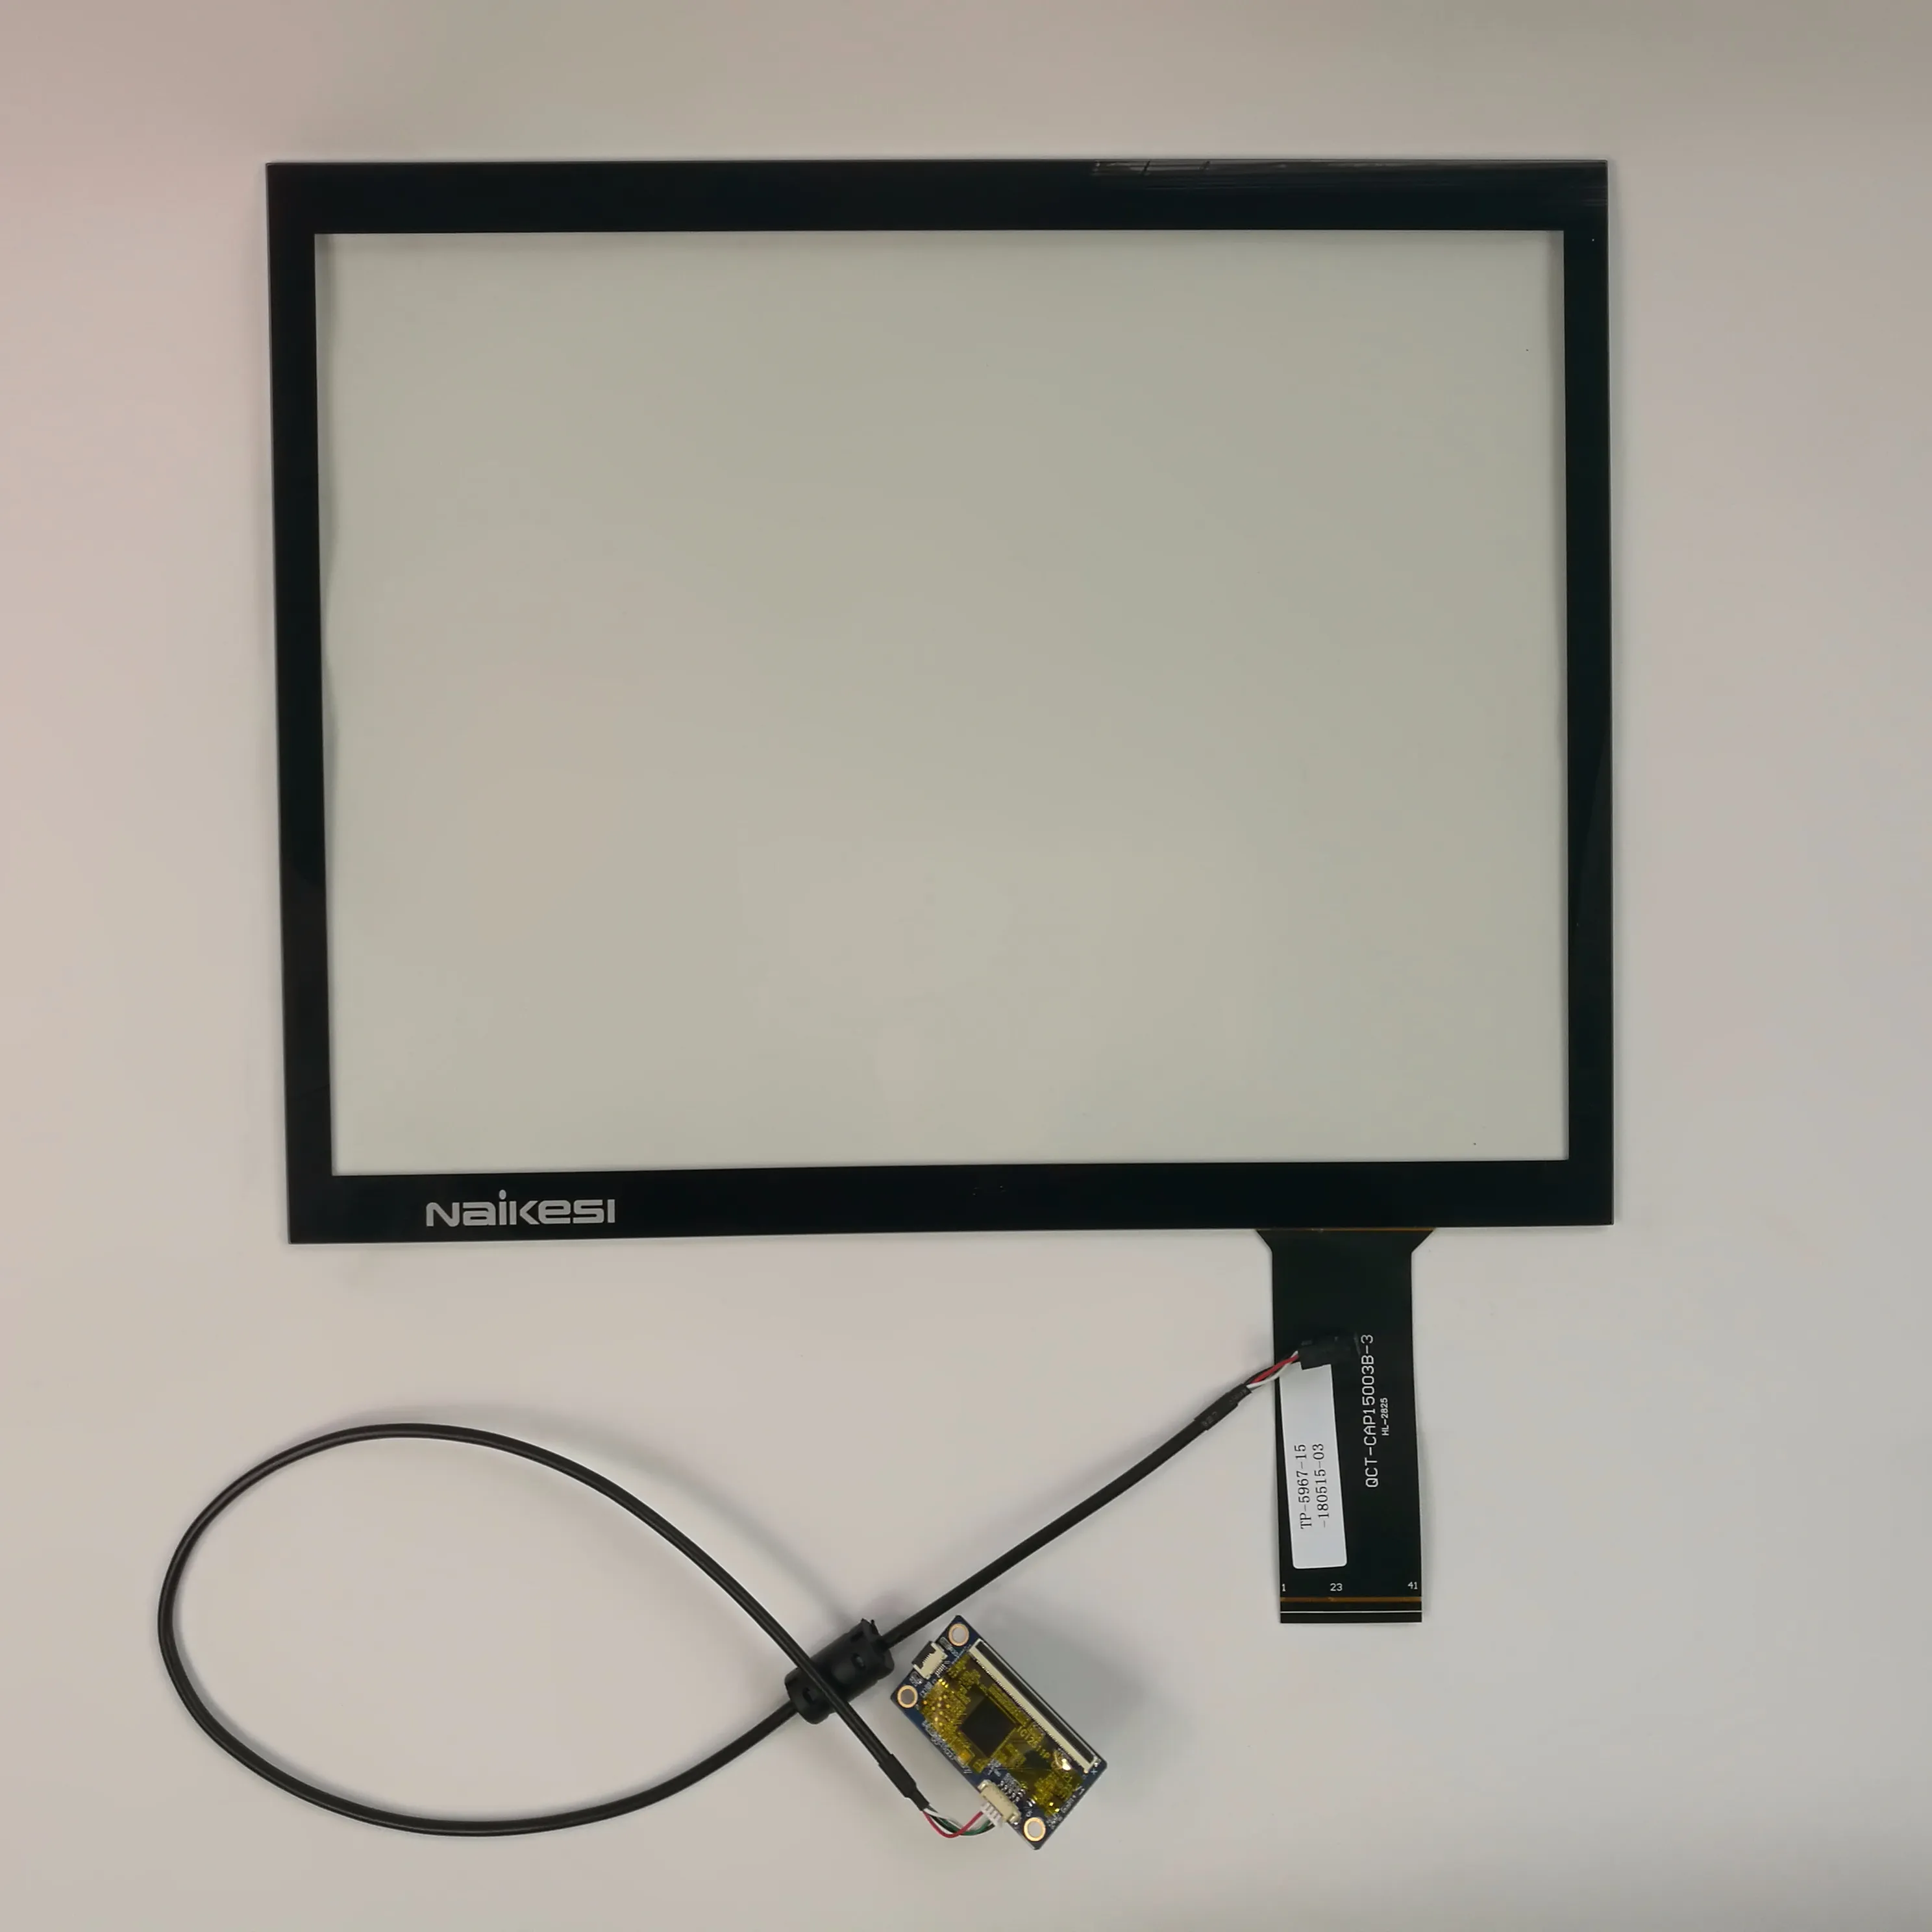 15 17 19 pollici monitor LCD fabbrica della cina capacitivo touch screen incorporato/Open frame touchscreen